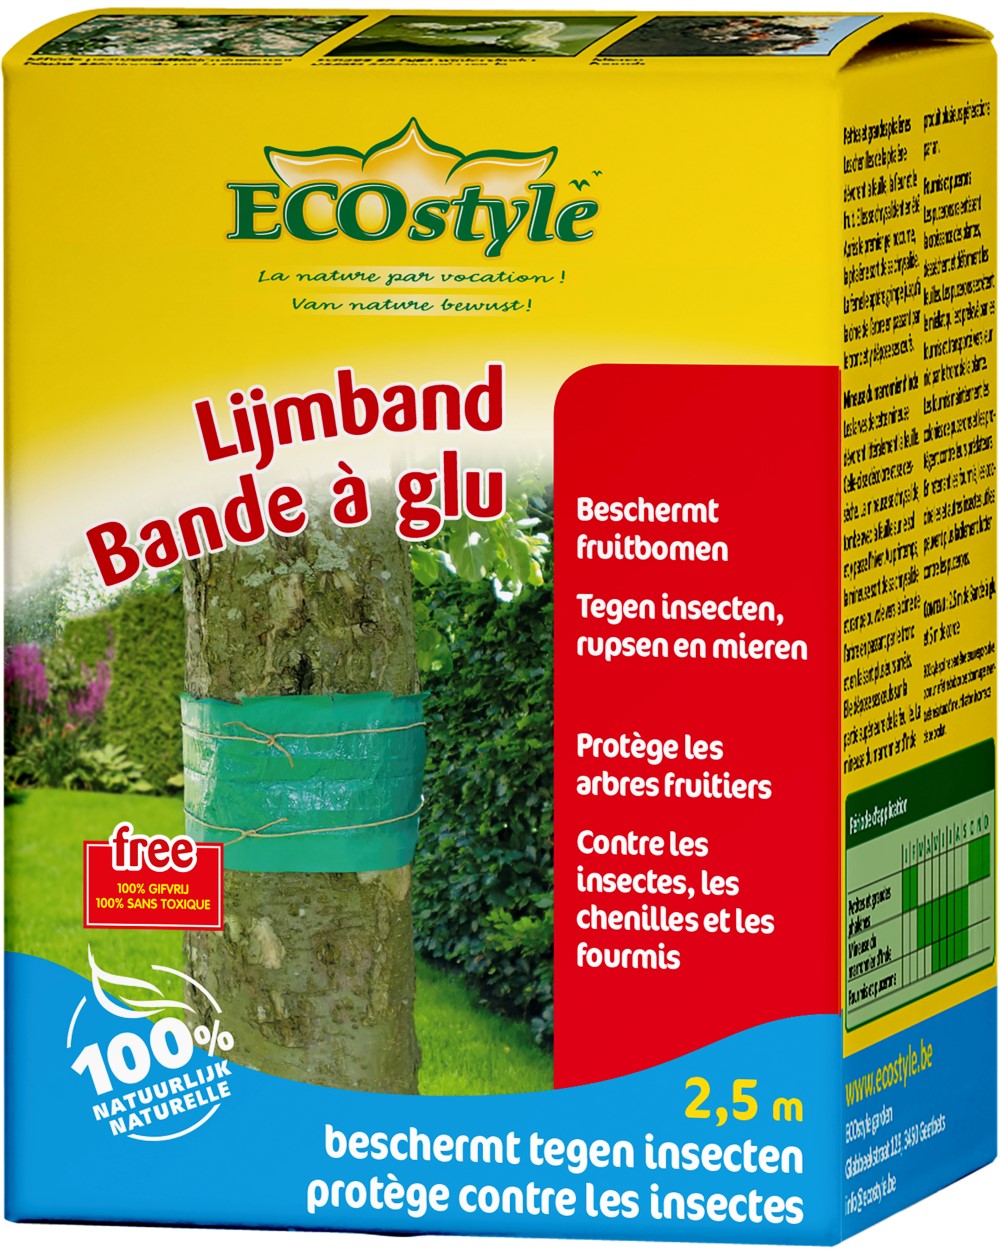 Afbeelding Ecostyle Lijmband - Gewasbescherming - 2.5 m door Haxo.nl